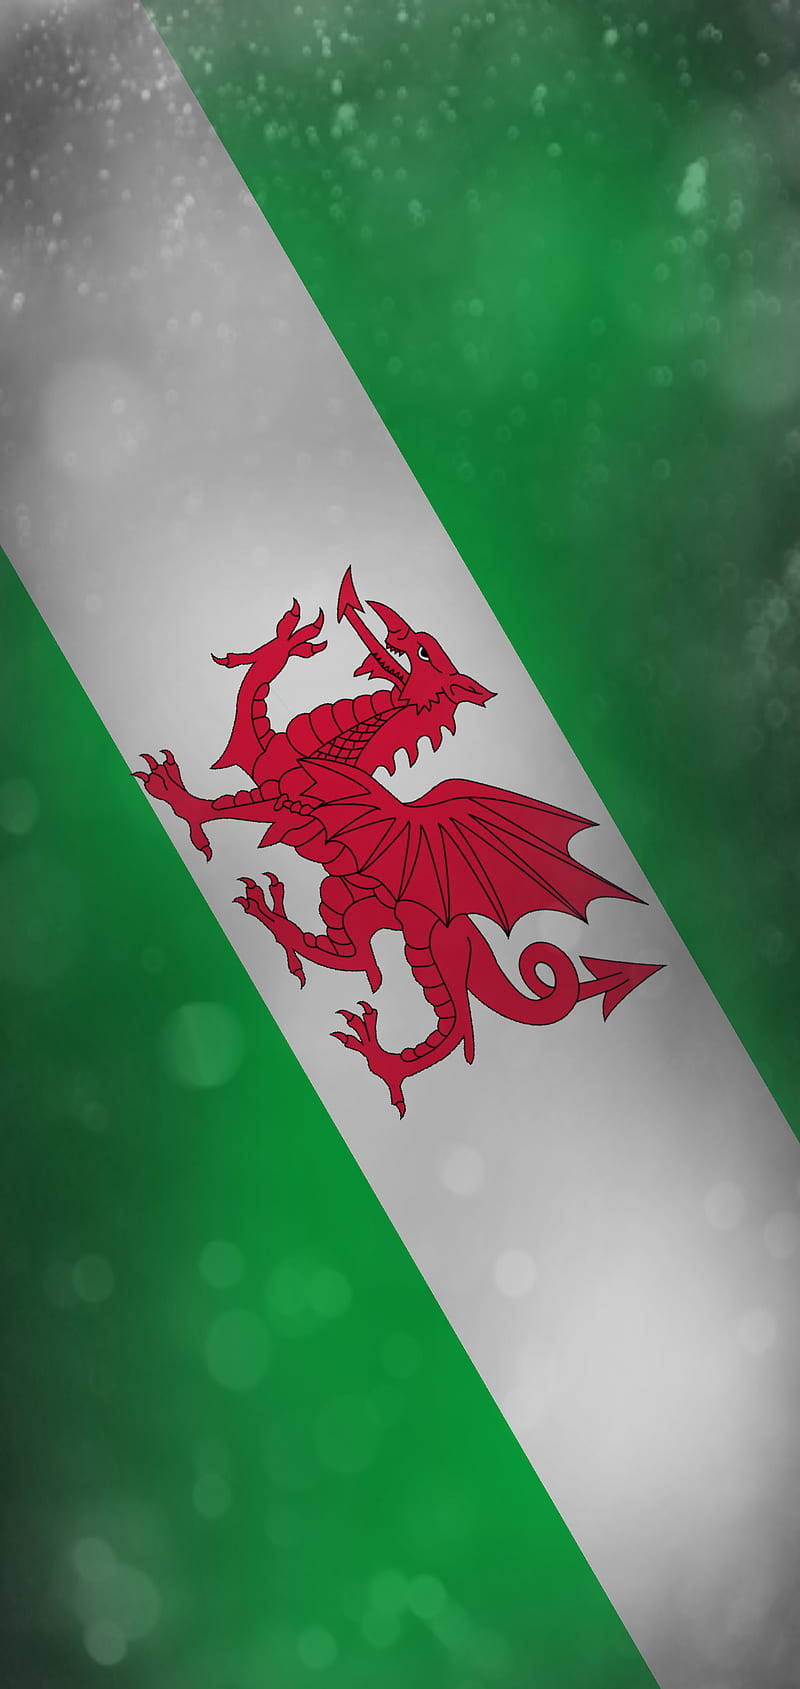 Diagonal portræt Wales nationale fodboldhold flagdesign tilføjer et smukt, dynamisk udseende til skrivebordet. Wallpaper